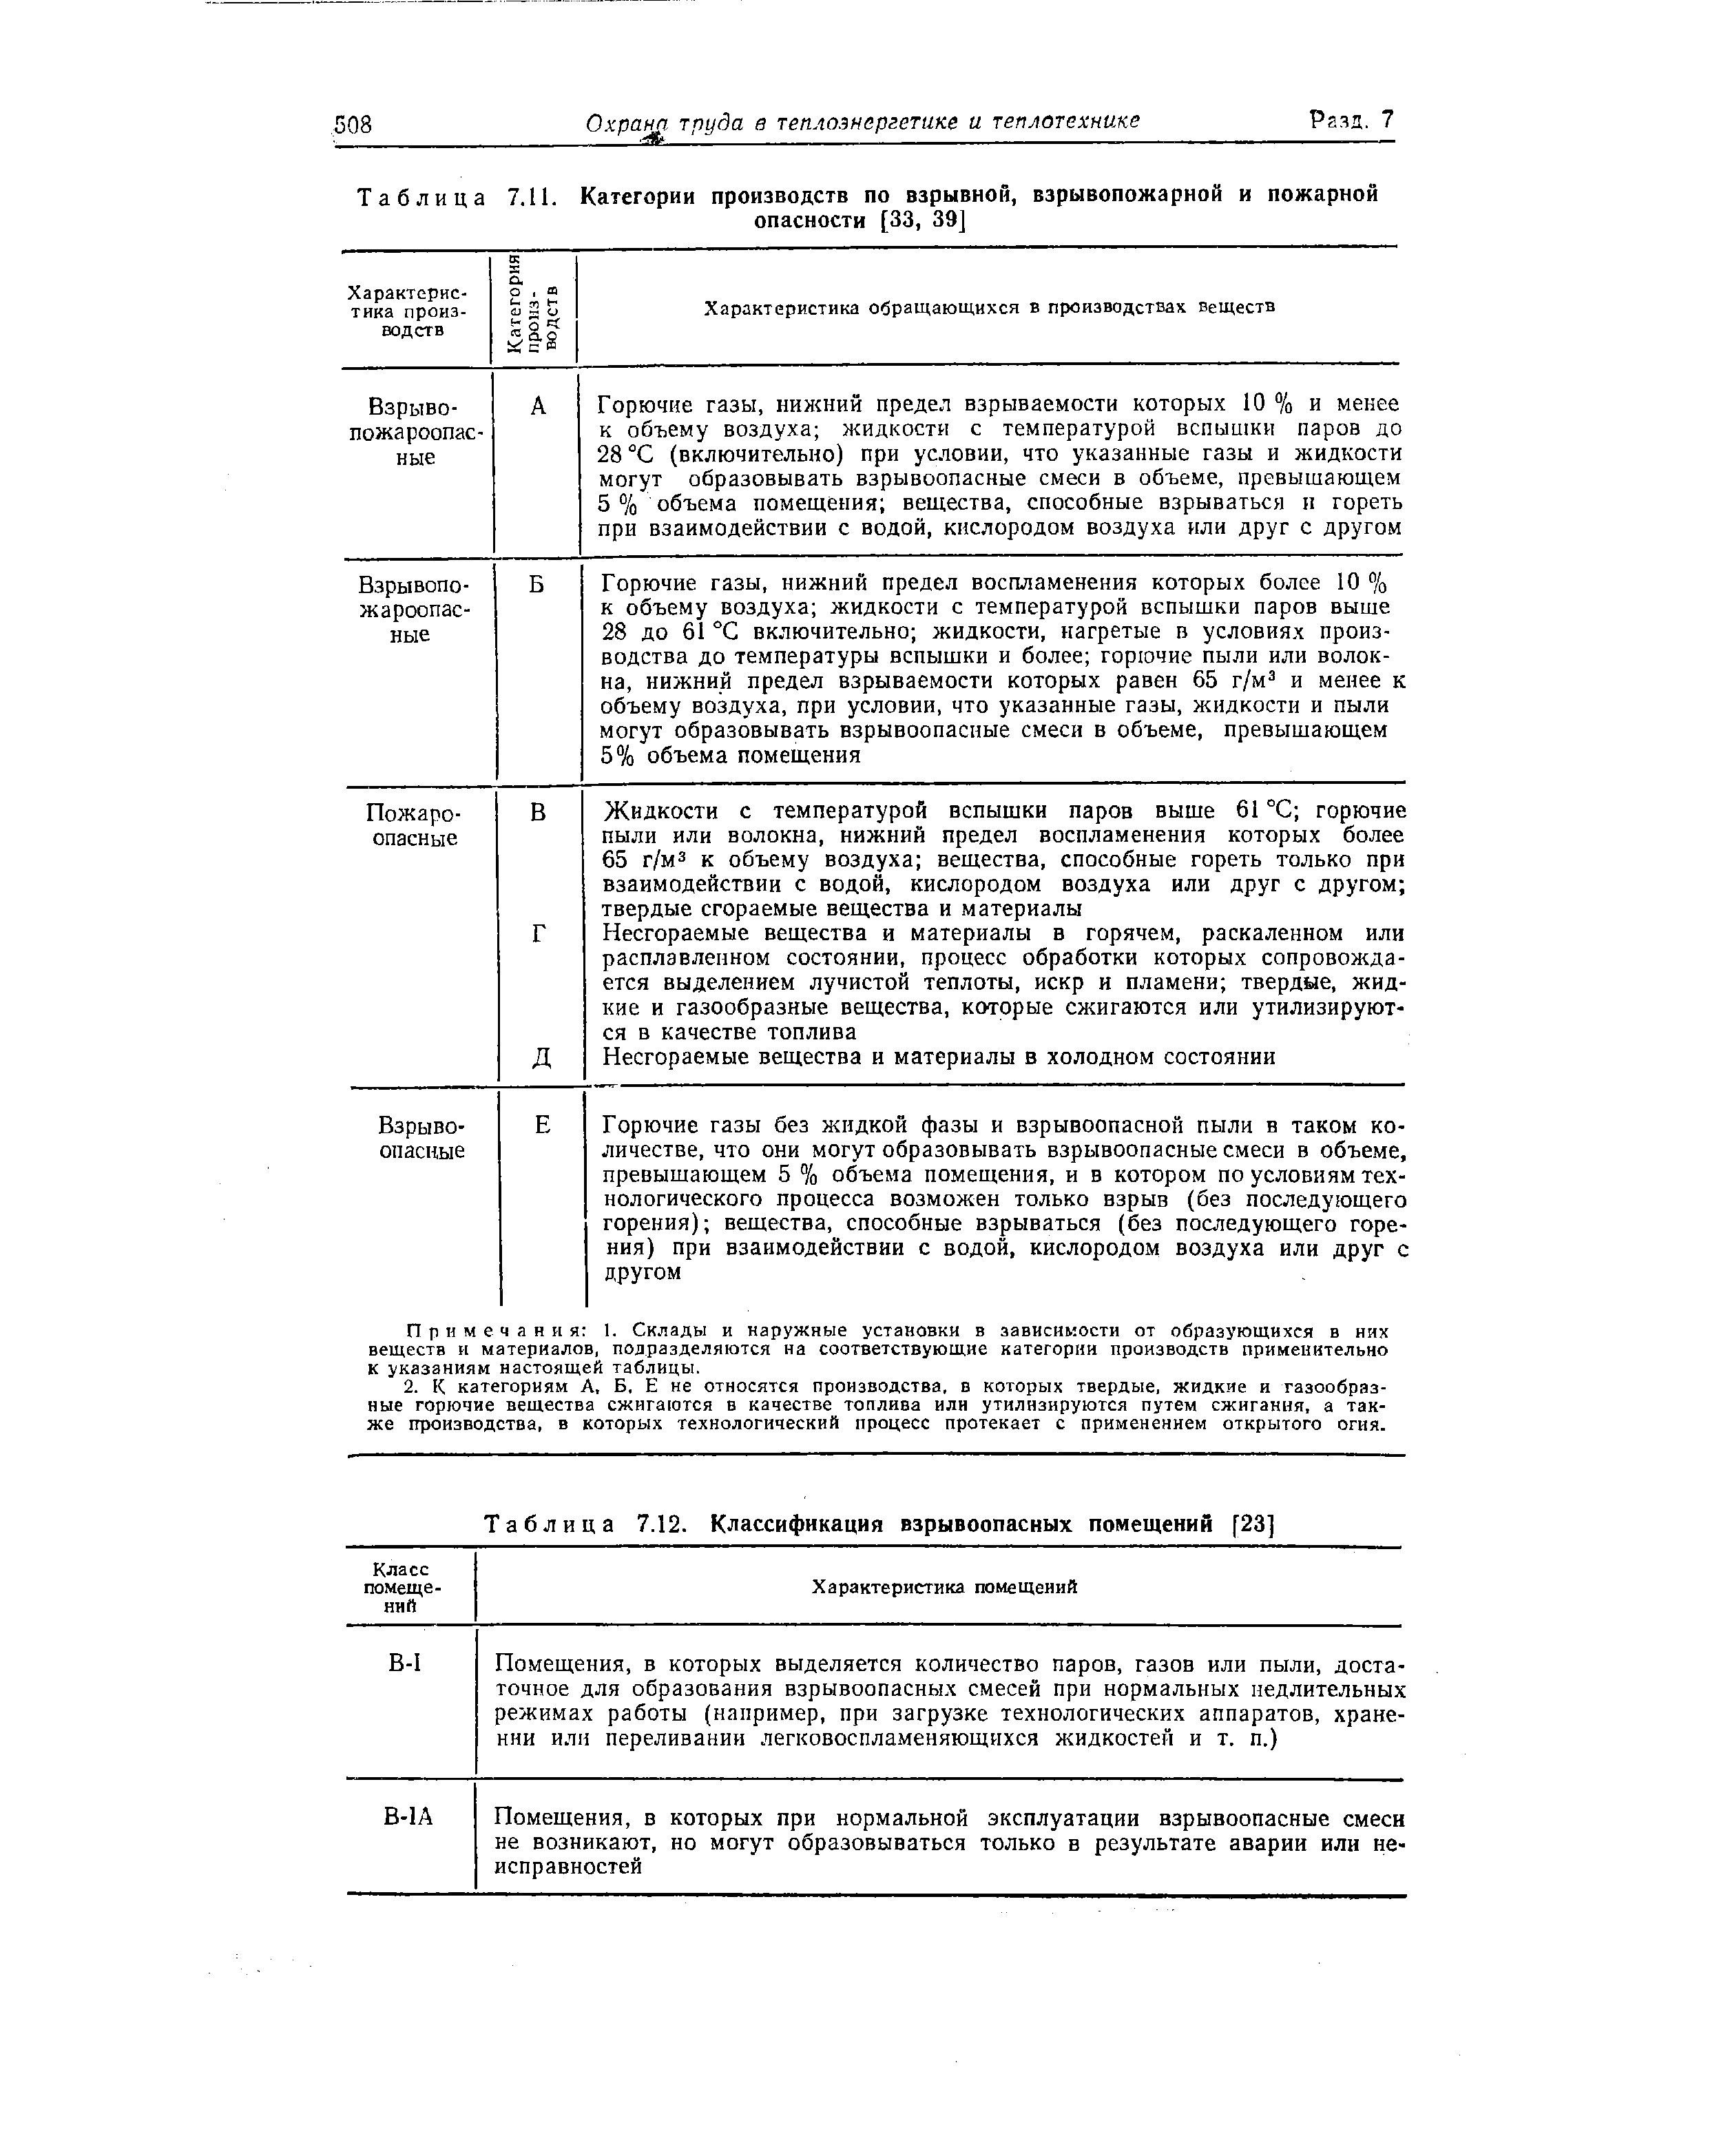 Таблица 7.12. Классификация взрывоопасных помещений [23]
